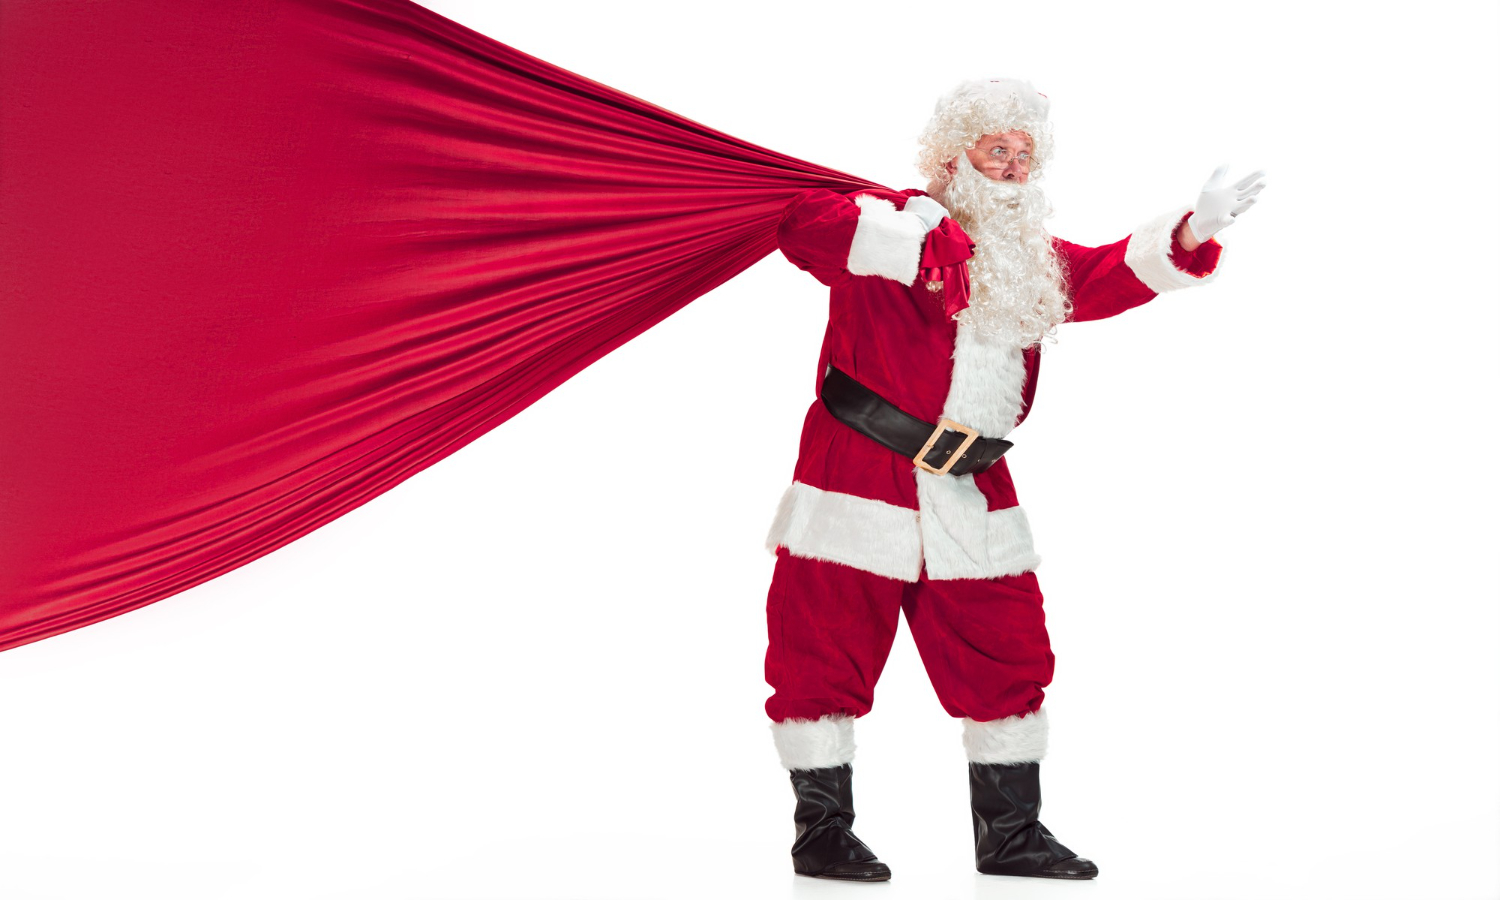 IS HR Selling Santa Claus?